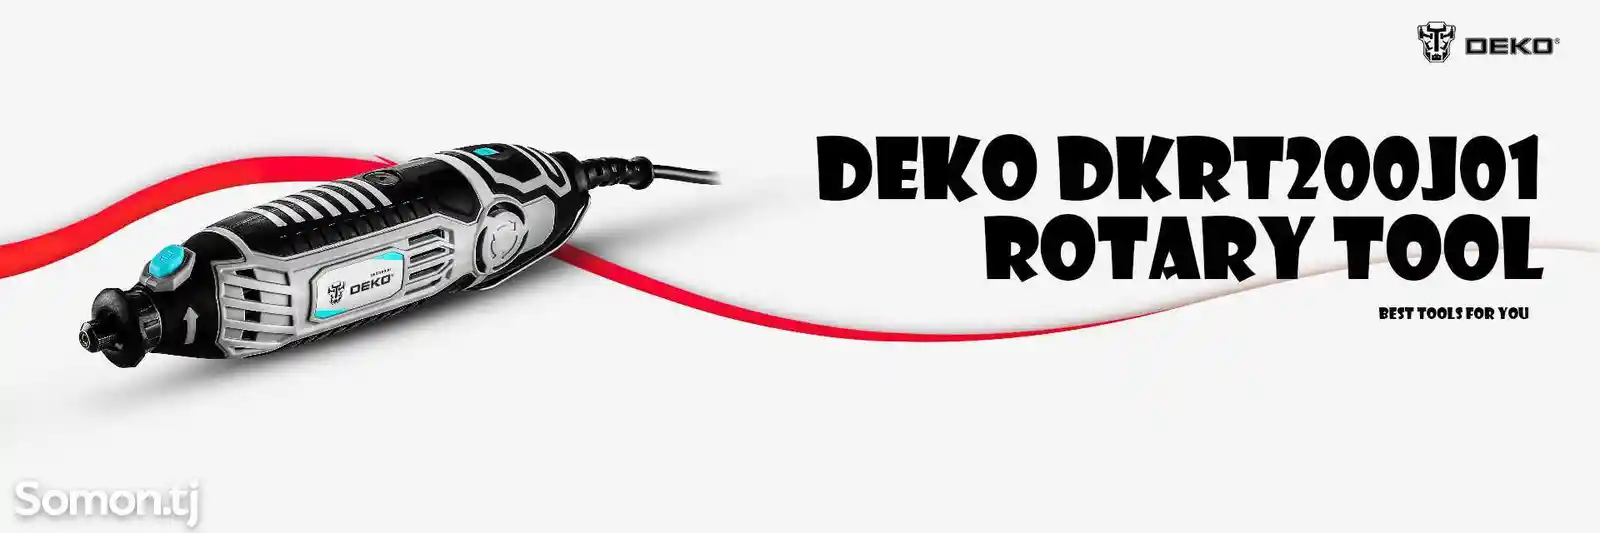 Мини-шлифовальный станок 200W Deko DKRT200J01 SET2 + 32 деталей-8